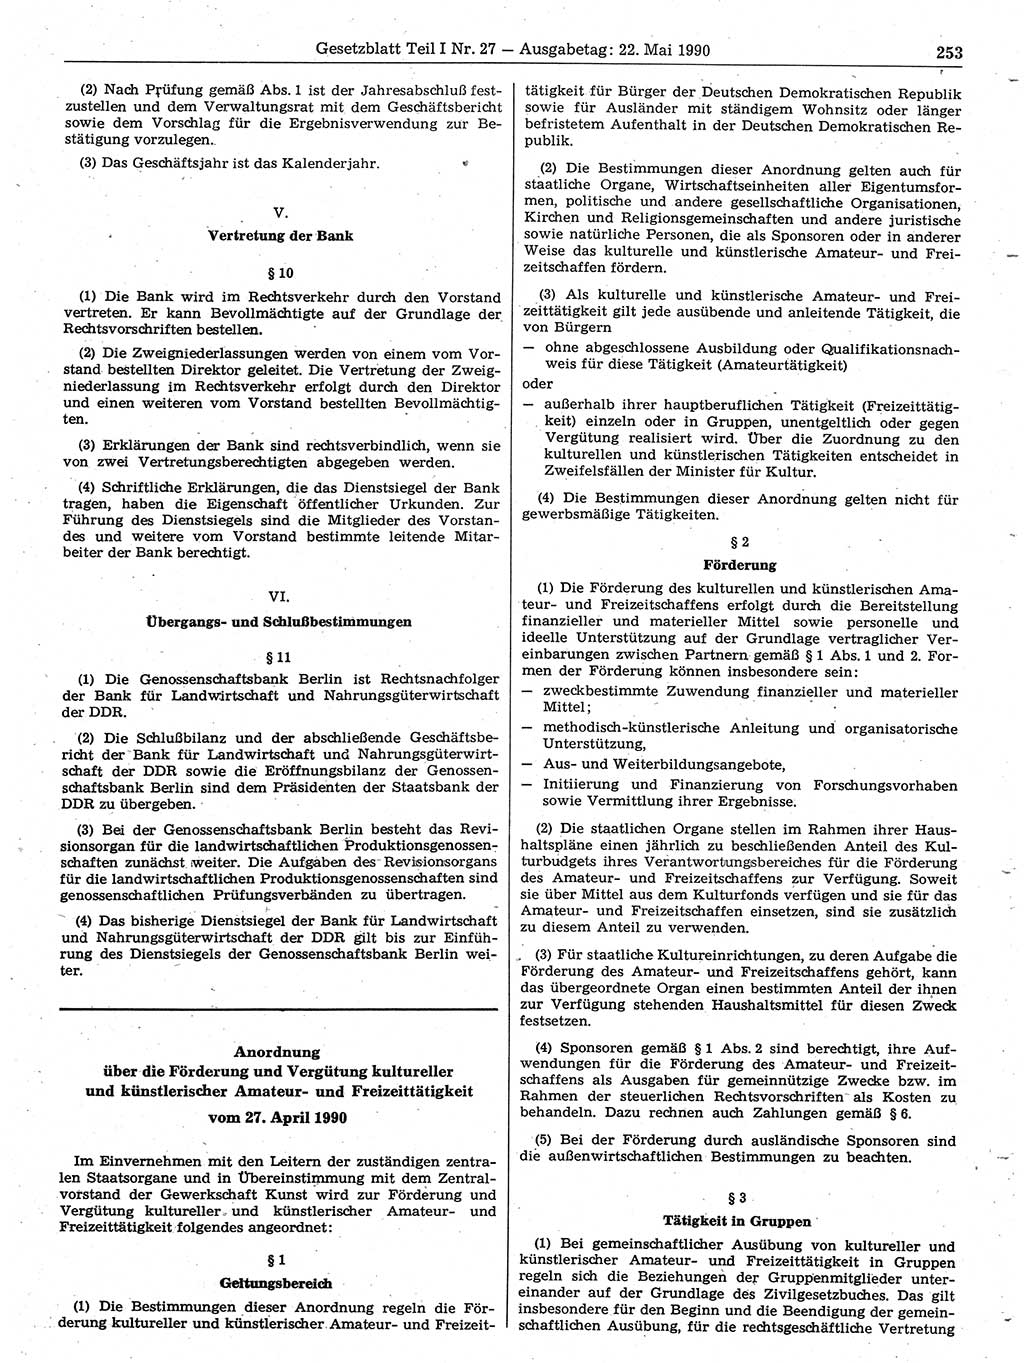 Gesetzblatt (GBl.) der Deutschen Demokratischen Republik (DDR) Teil Ⅰ 1990, Seite 253 (GBl. DDR Ⅰ 1990, S. 253)